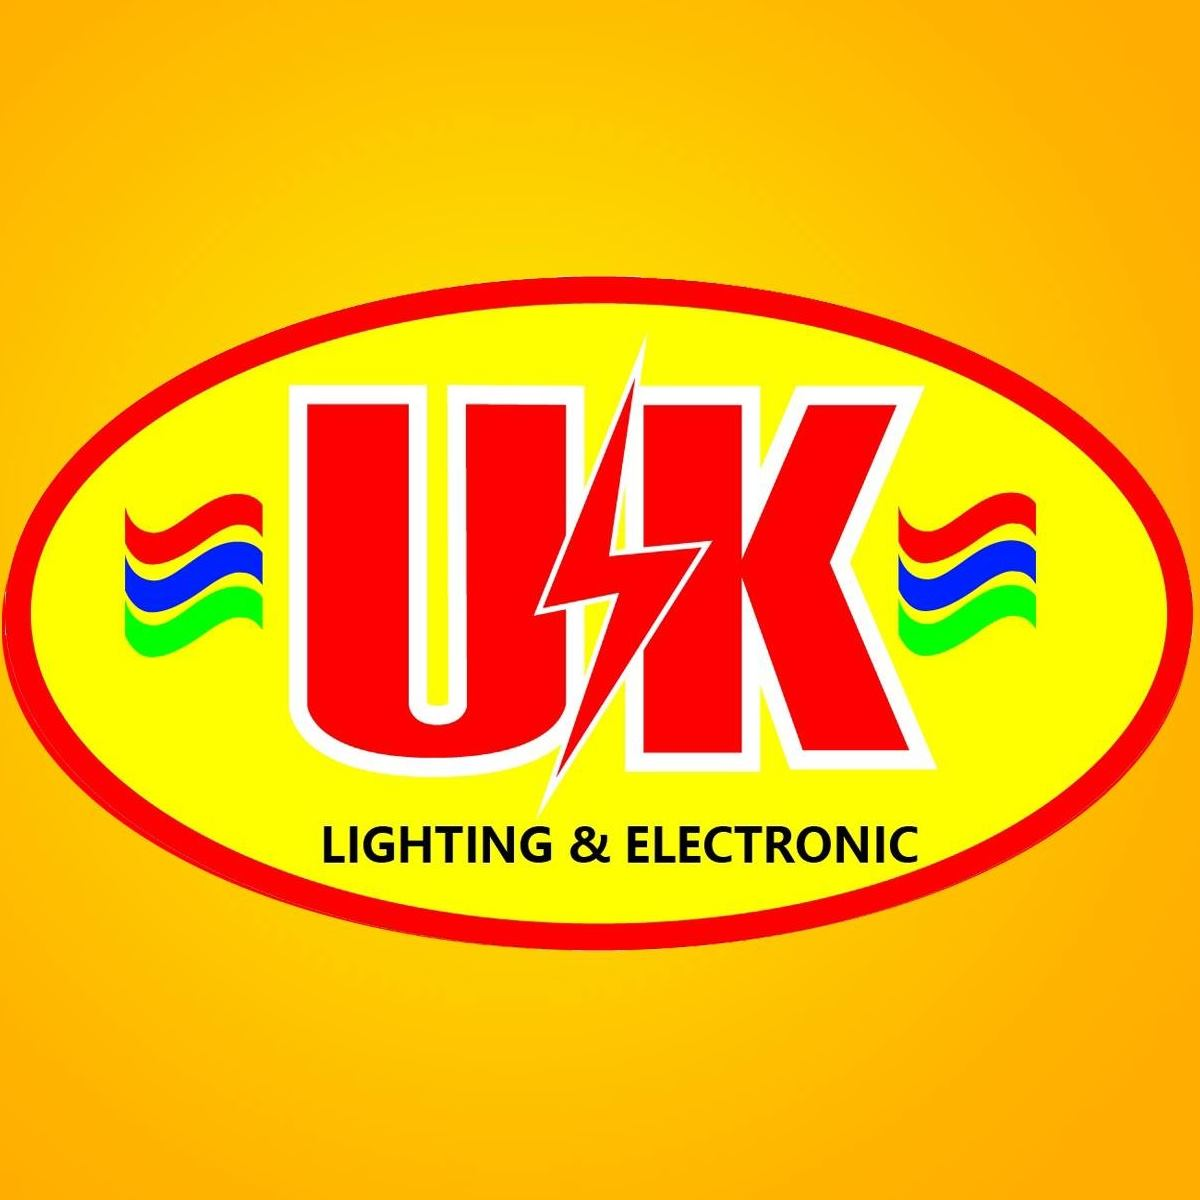 Uk Lighting & Electronics